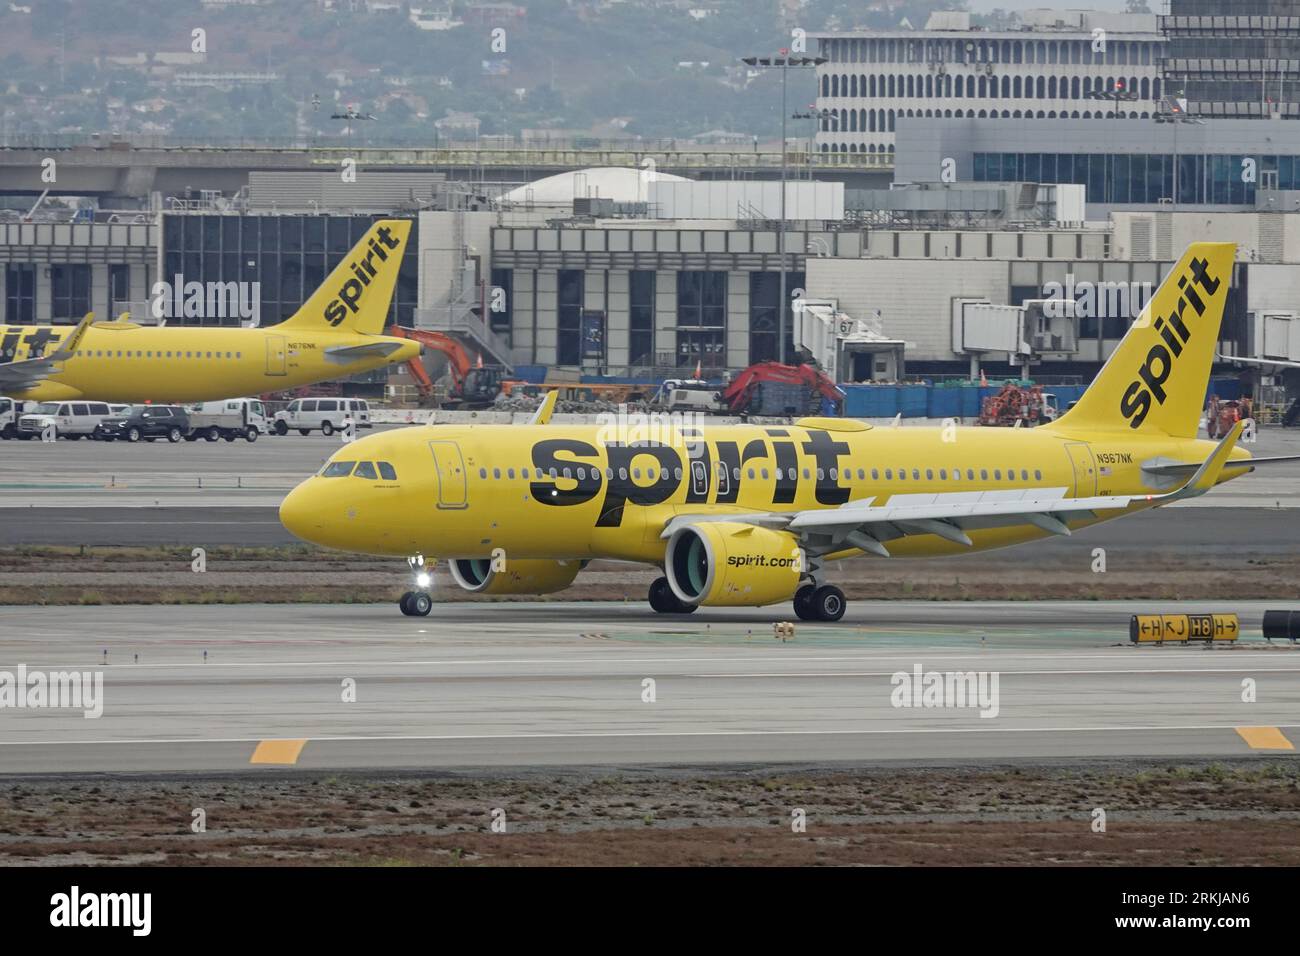 Los Angeles, California / USA - 21 agosto 2023: Un aereo di linea commerciale Airbus A320 giallo, operato da Spirit Airlines, viene mostrato in rullaggio al LAX. Foto Stock